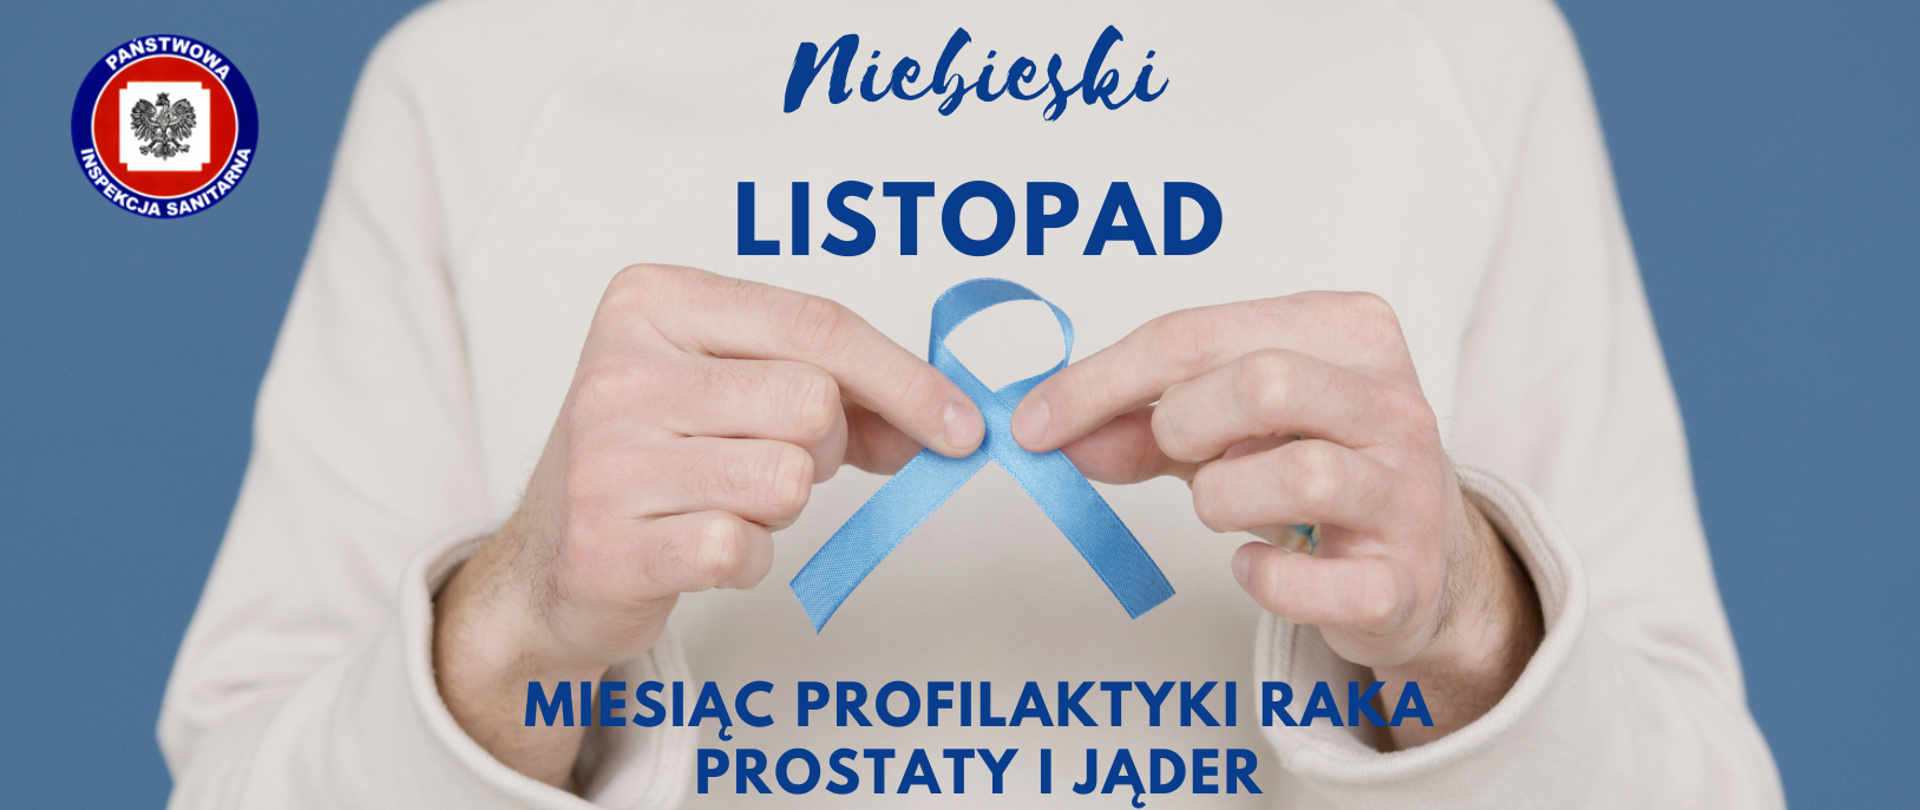 Mężczyzna trzyma w dłoniach niebieska wstążkę. Napis u góry zdjęcia "Niebieski listopad", na dole zdjęcia napis" miesiąc profilaktyki raka prostaty i jąder"